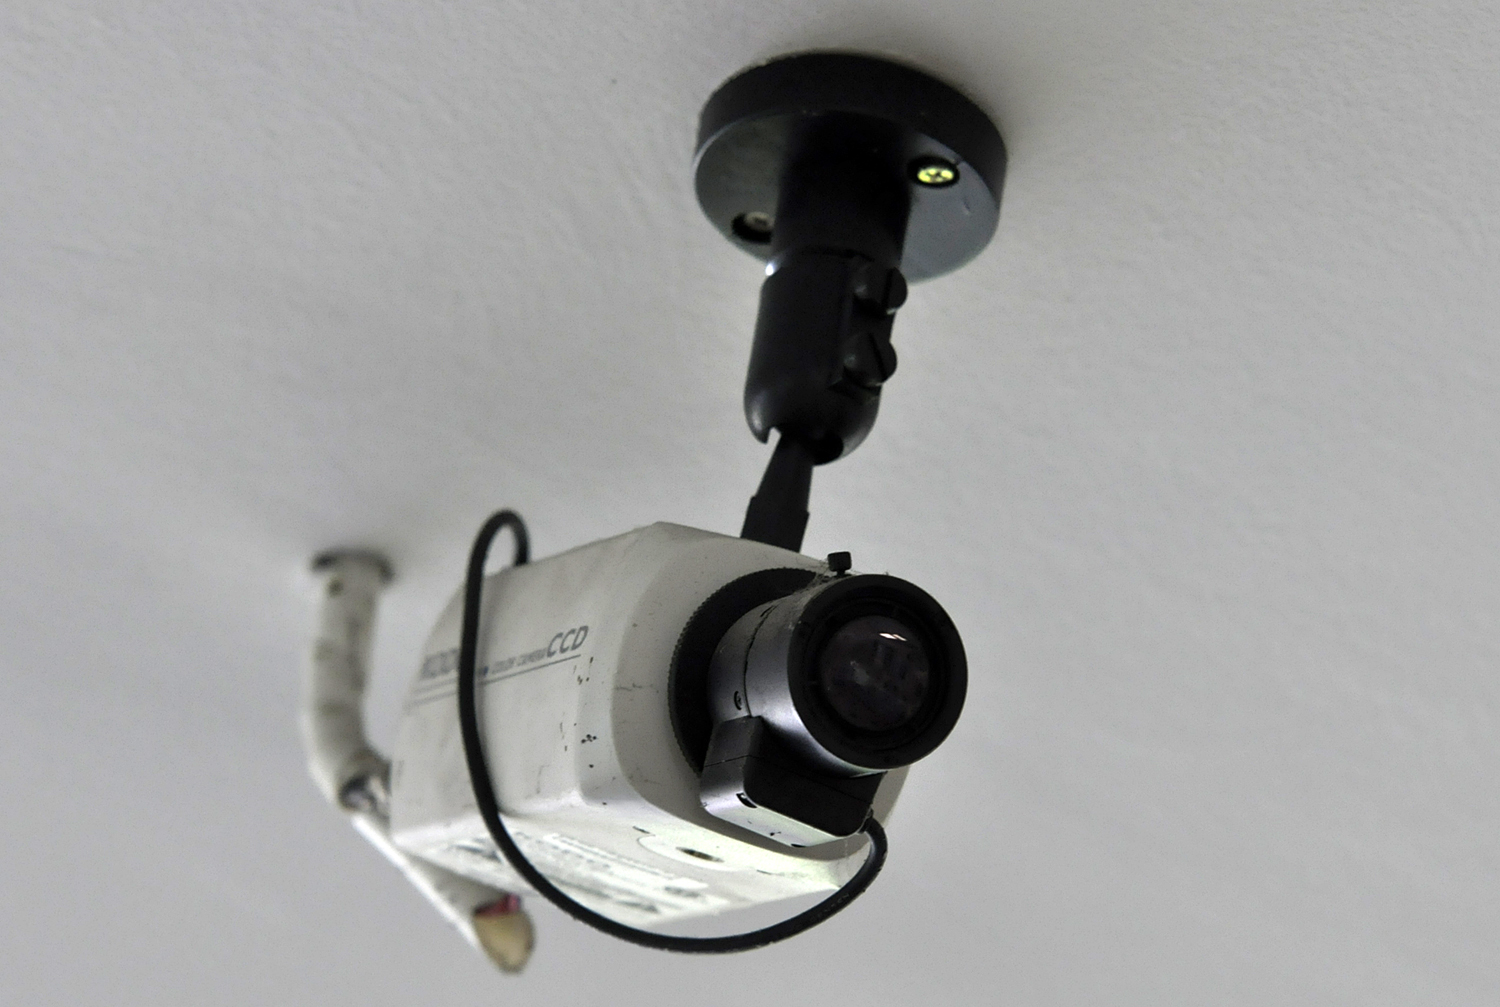 Projeto prevê instalação de câmeras em escolas 